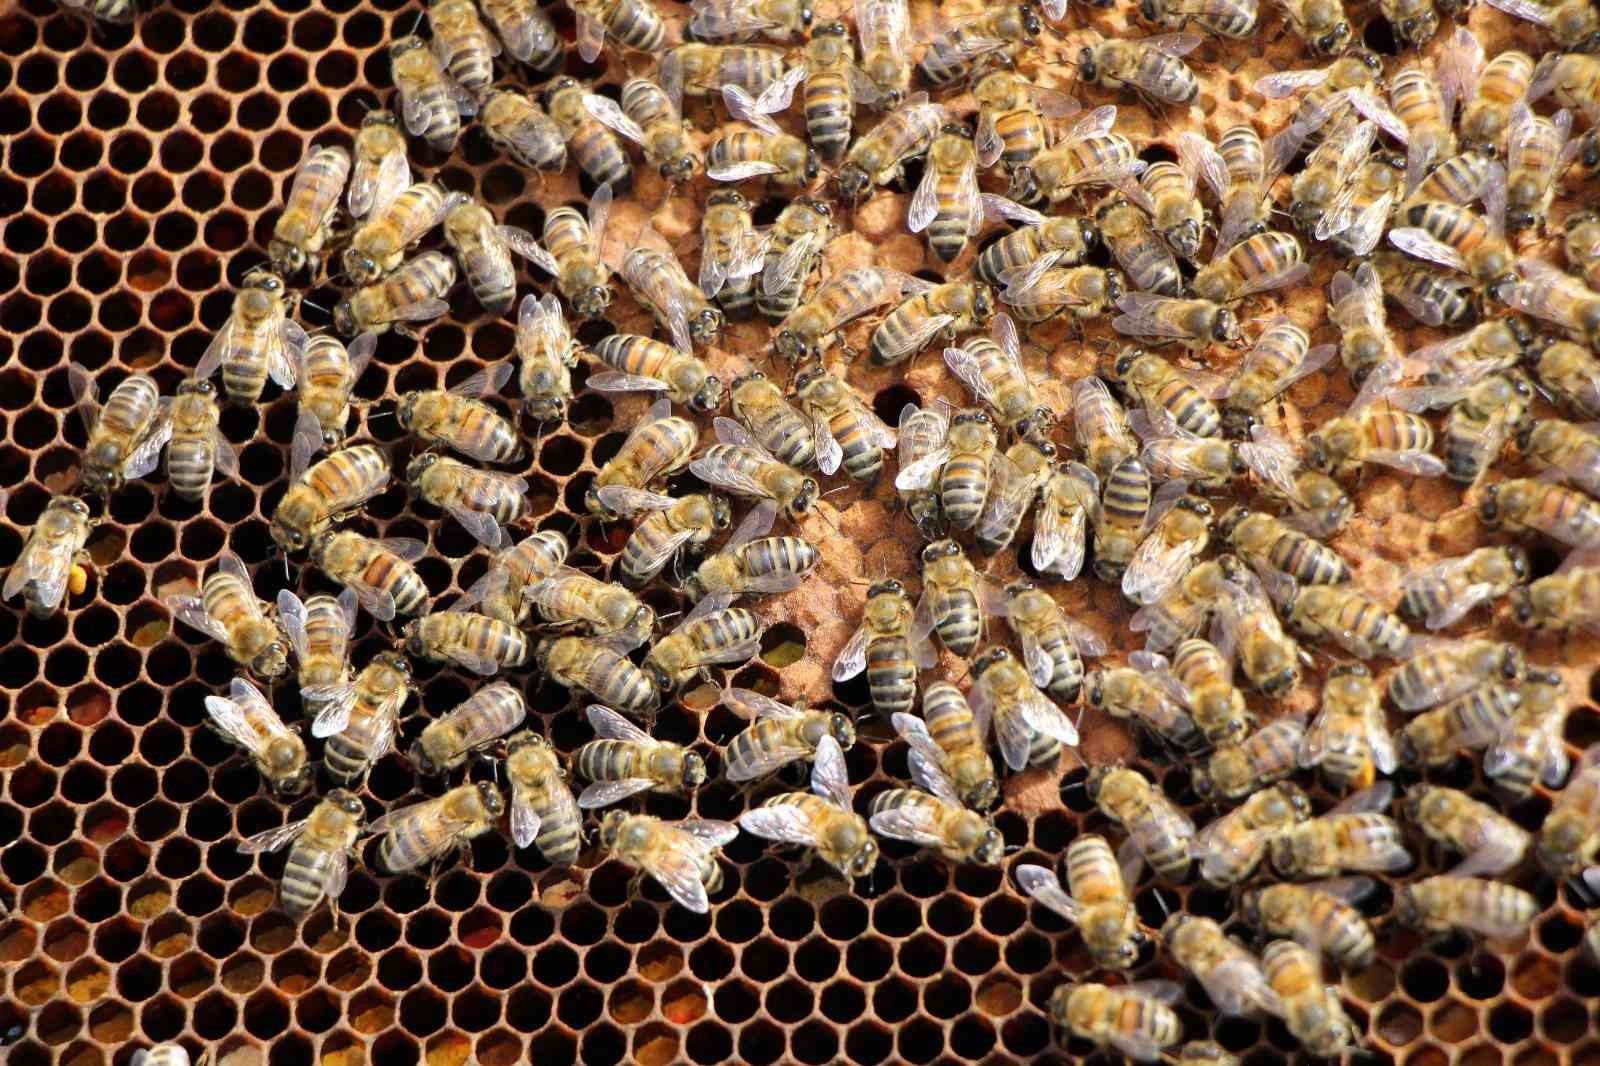 Binlerce arının arasında korkusuzca dolaşıyor